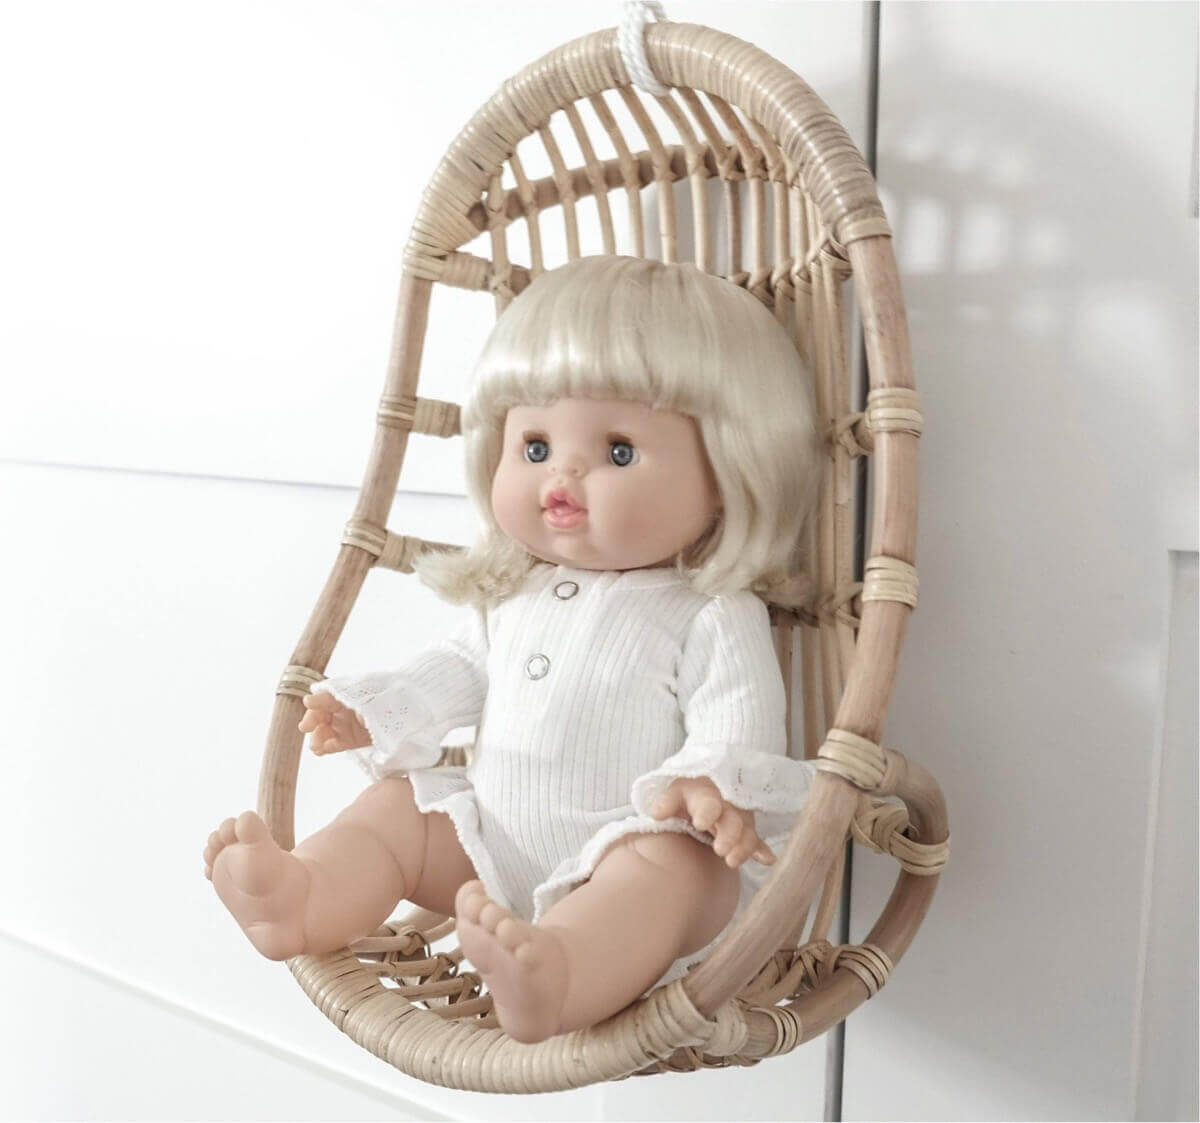 Chaise suspendue en rotin pour poupée - Poppie Toys - Accessoire